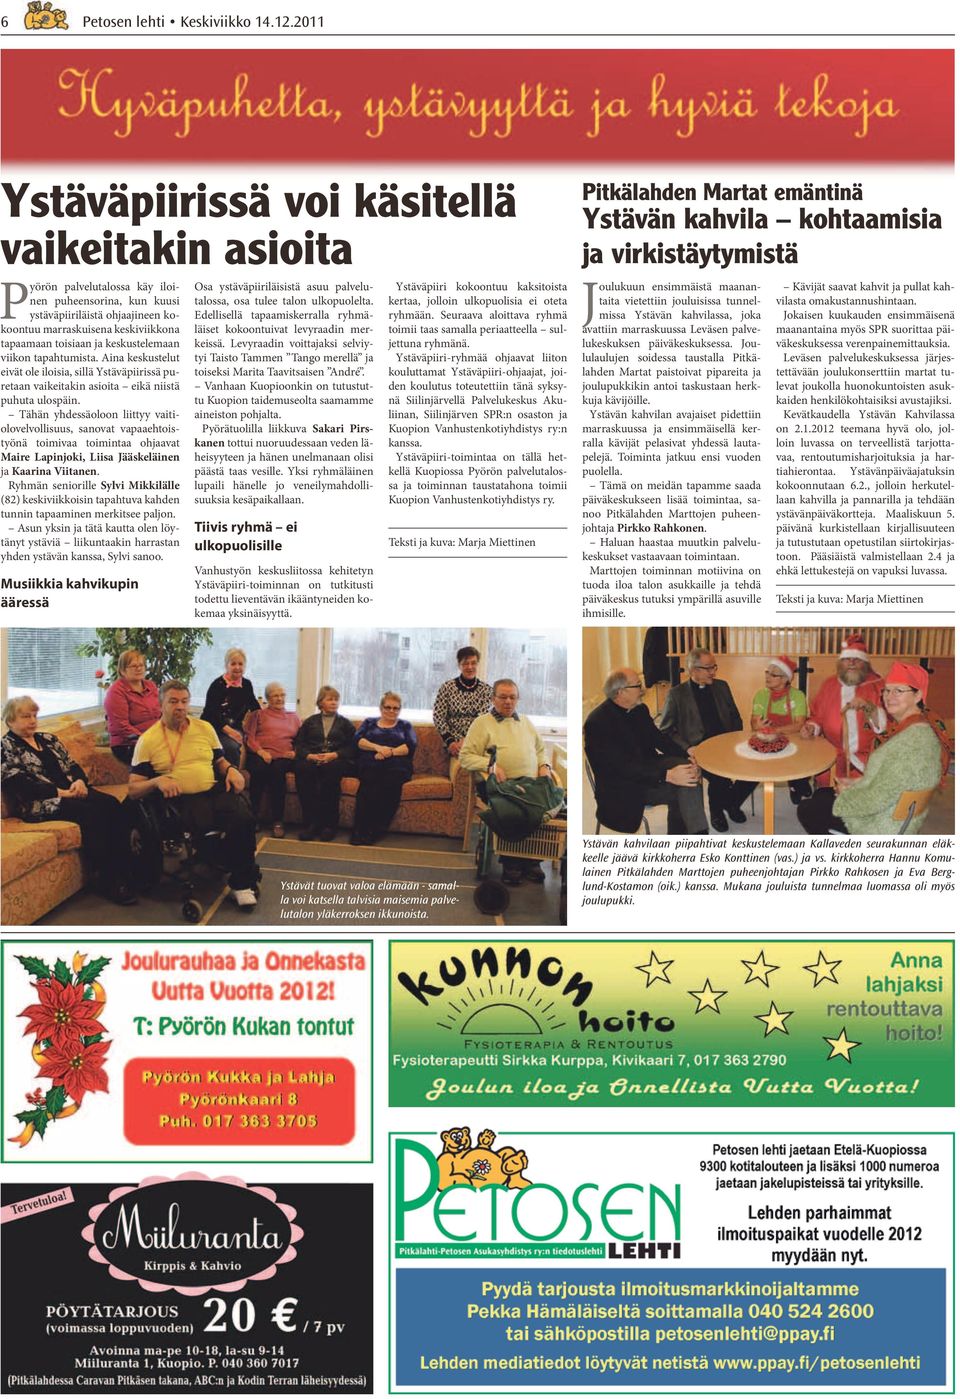 Tähän yhdessäoloon liittyy vaitiolovelvollisuus, sanovat vapaaehtoistyönä toimivaa toimintaa ohjaavat Maire Lapinjoki, Liisa Jääskeläinen ja Kaarina Viitanen.